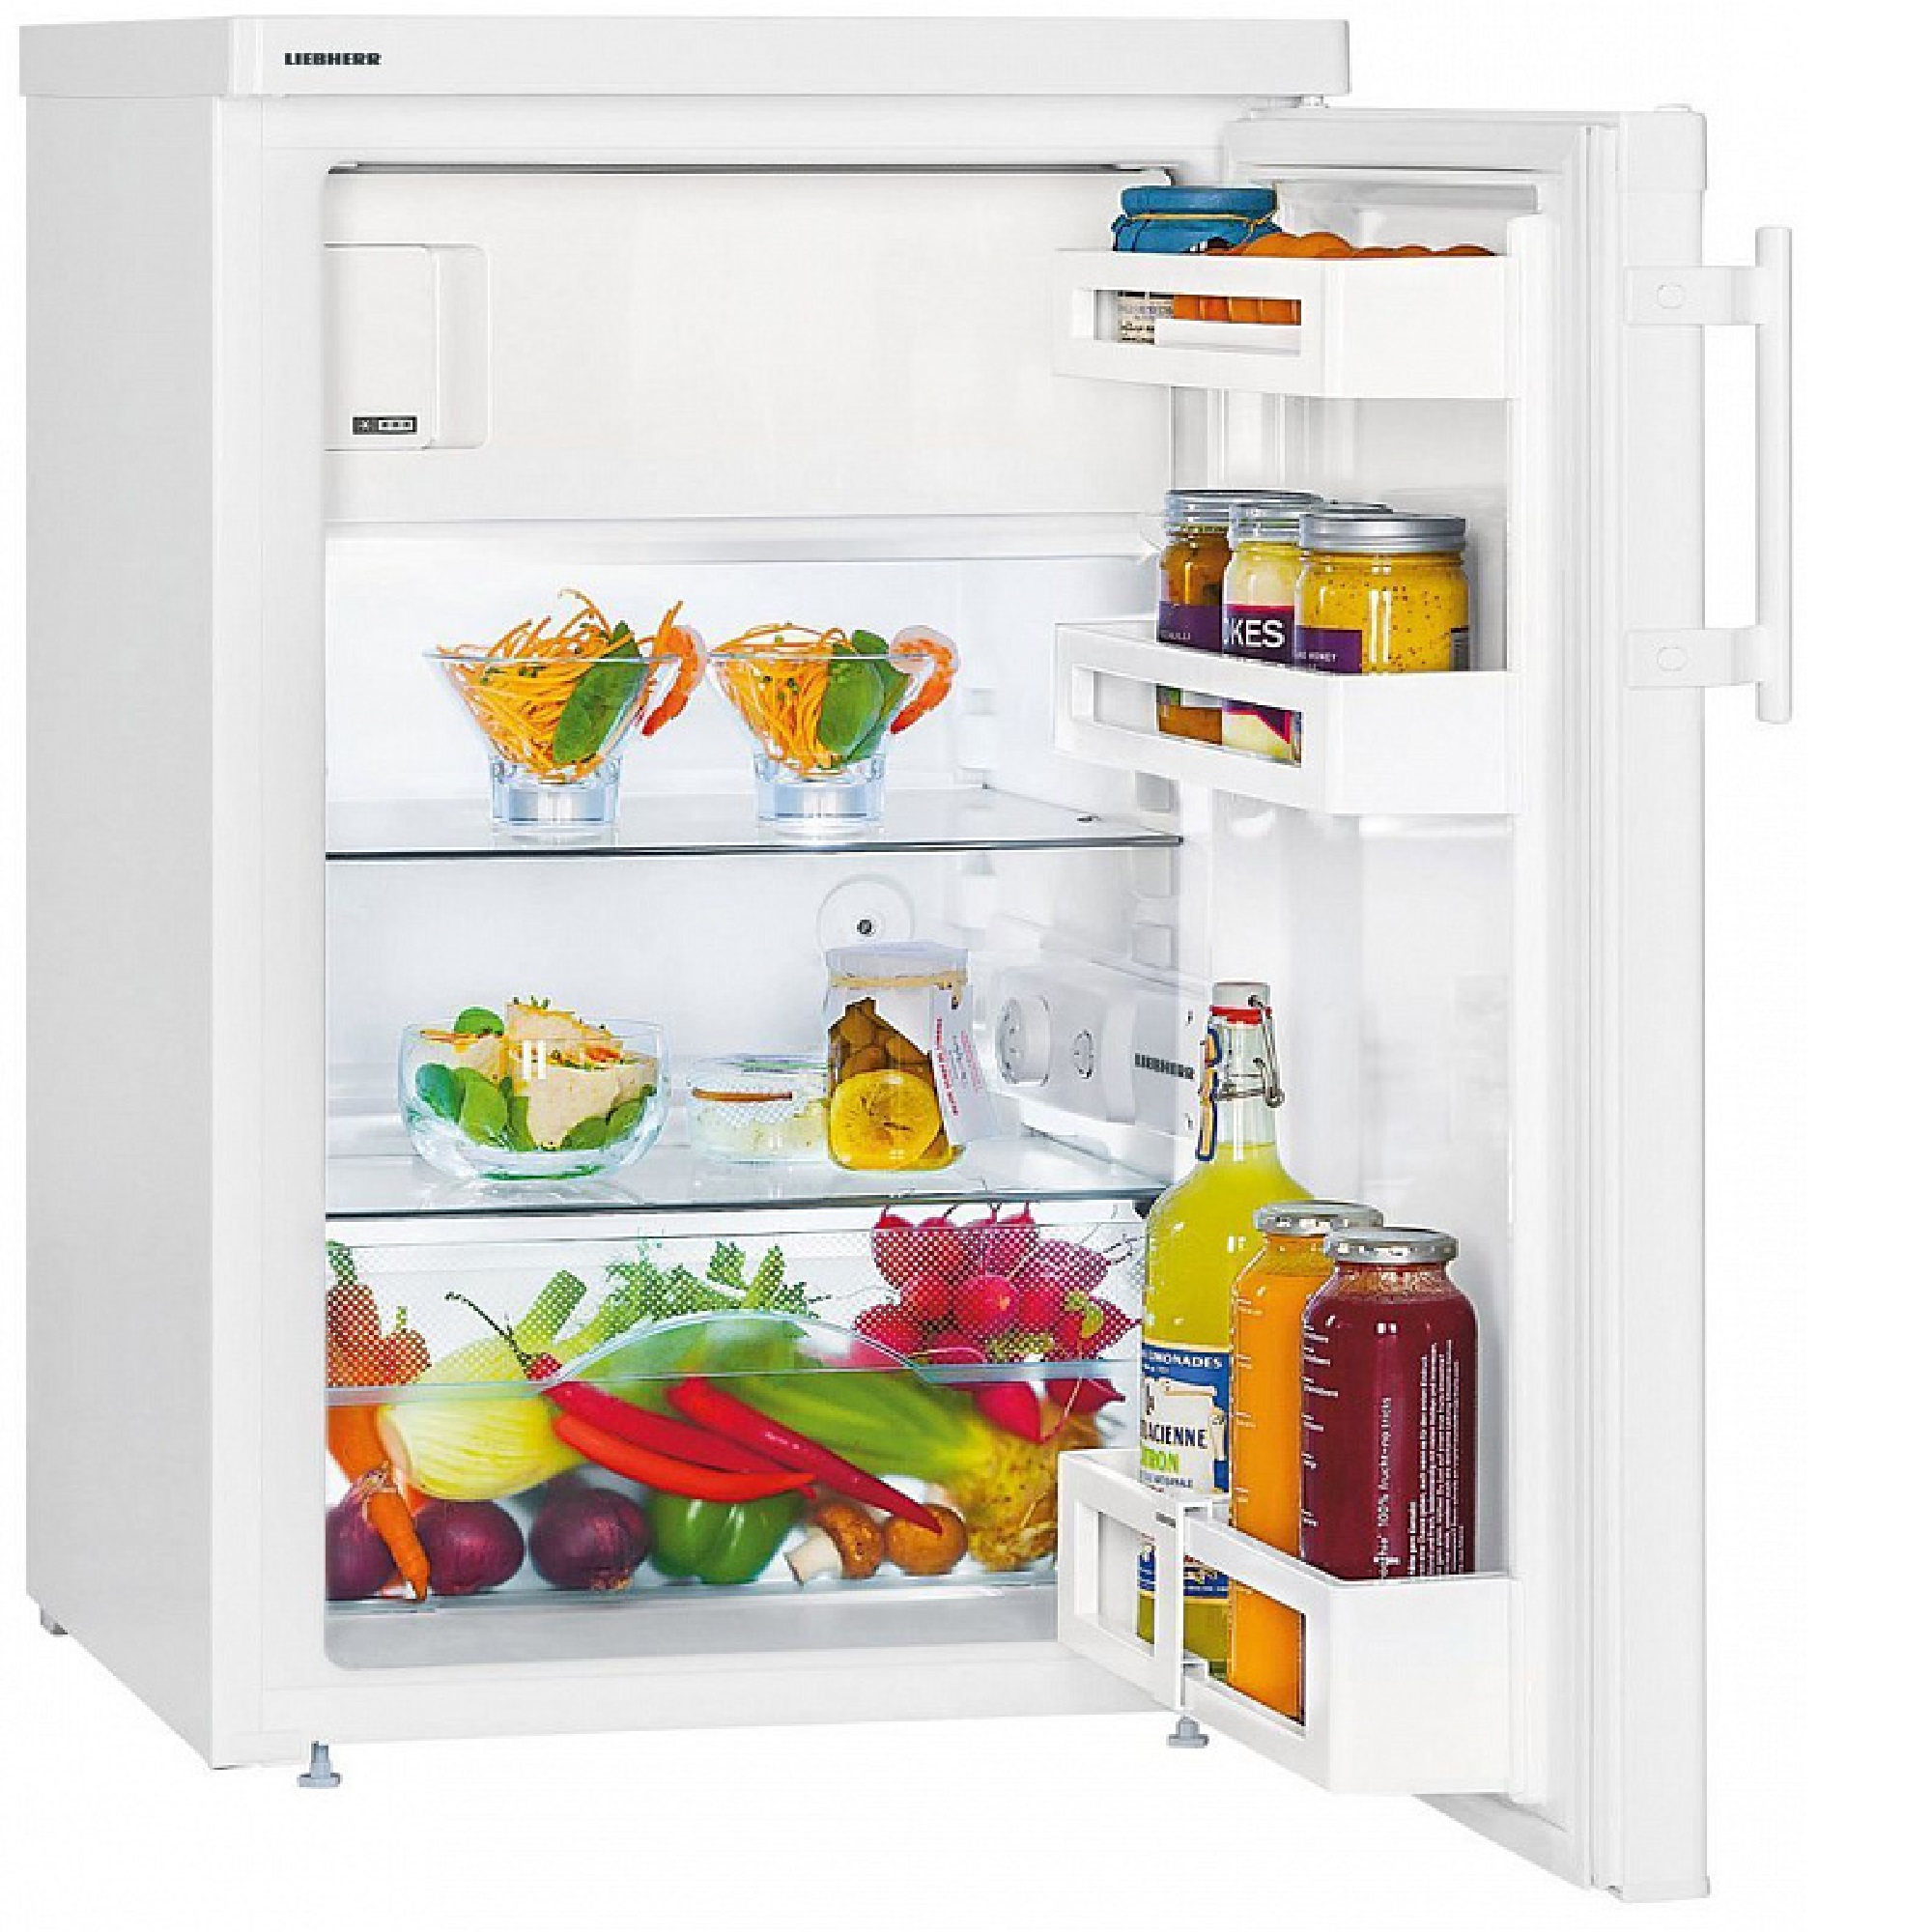 Купить маленький холодильник с морозильной камерой. Холодильник Liebherr t 1414. Однокамерный холодильник Liebherr t 1414-22. Liebherr Comfort TSL 1414. Холодильник Liebherr KT 1414.